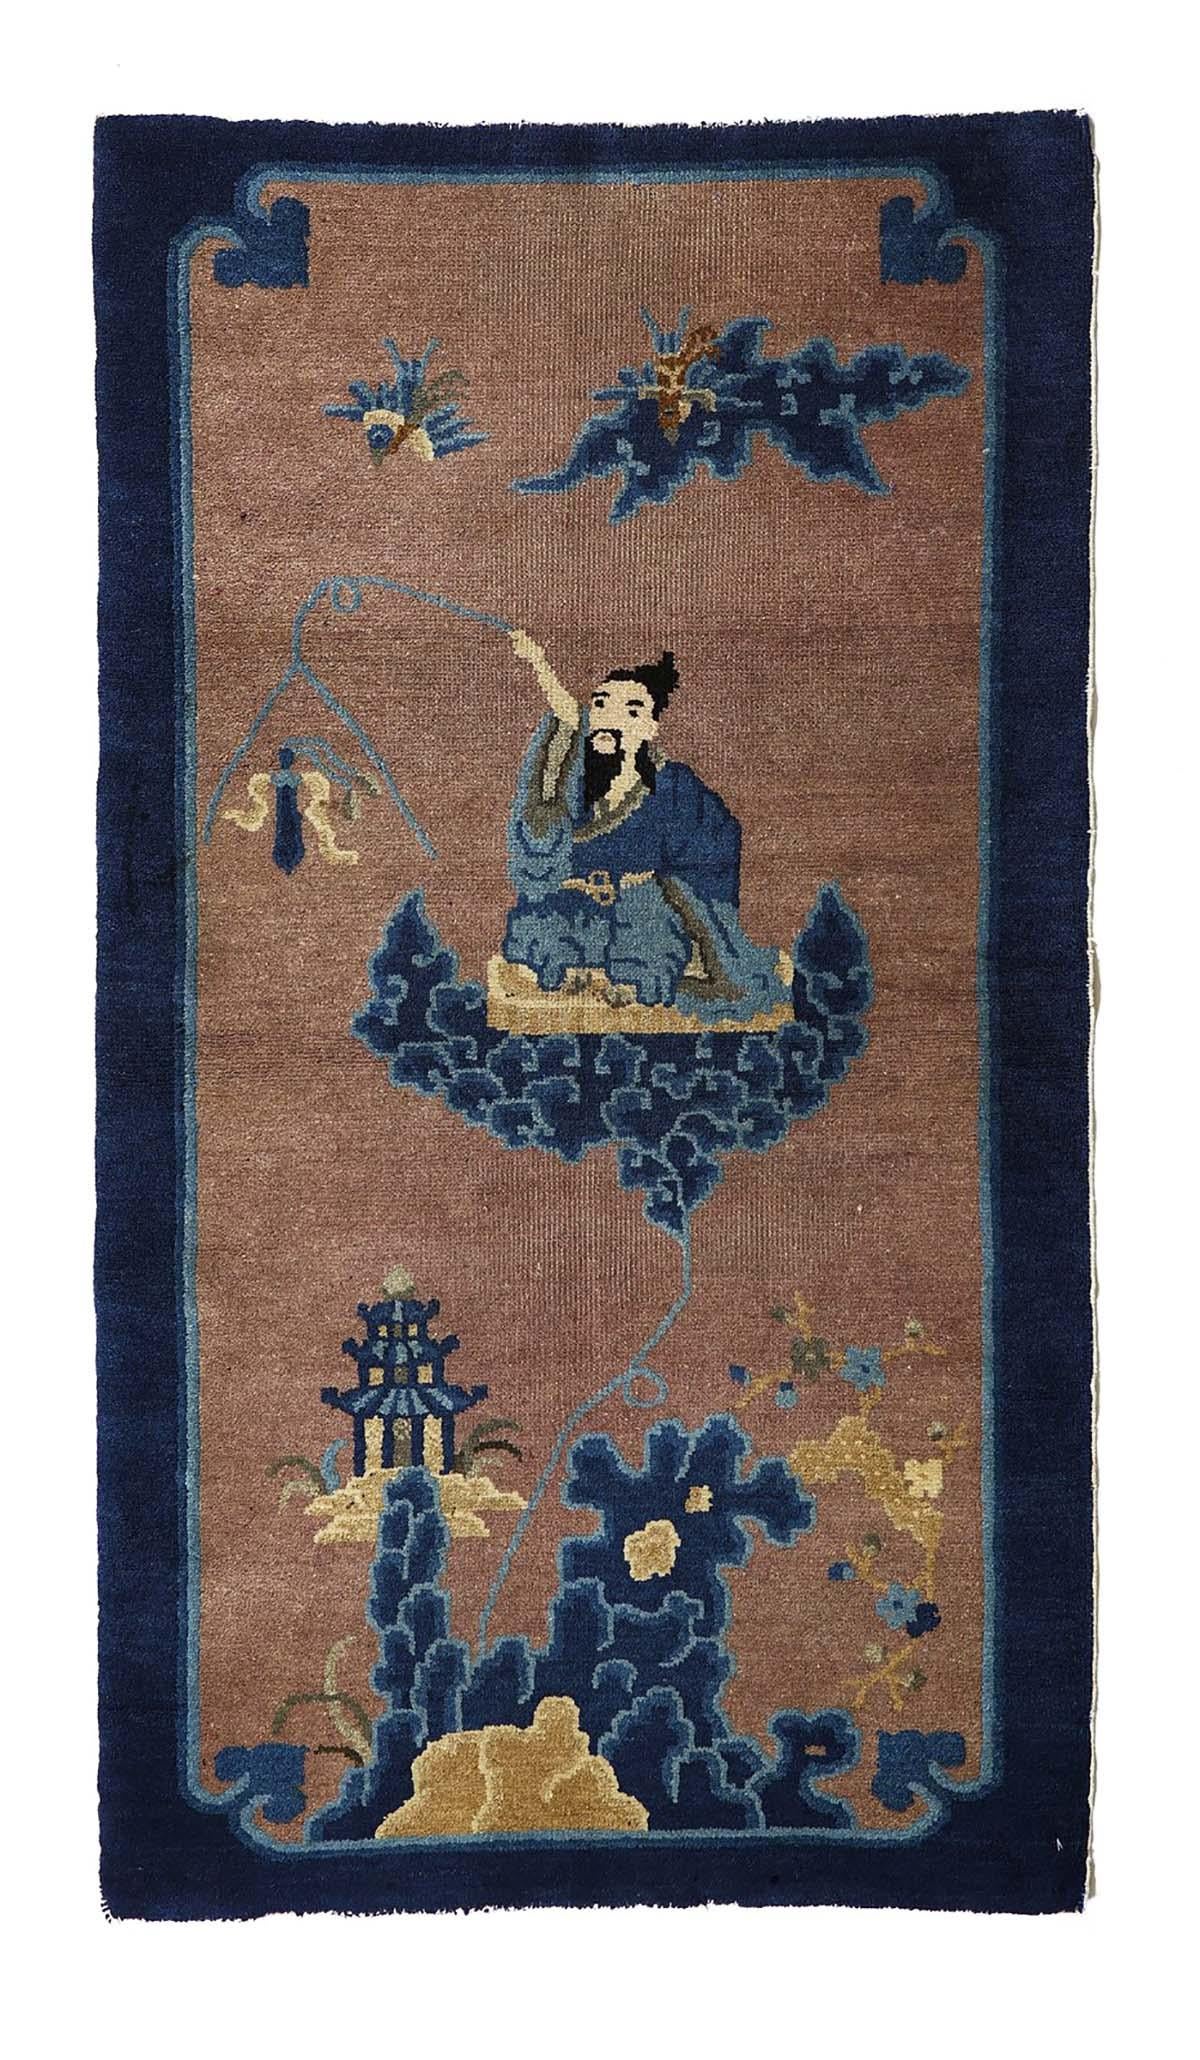 Hier sehen Sie einen prächtigen antiken Teppich aus der späten Ming-Dynastie, ein wahres Zeugnis der Kunstfertigkeit und Handwerkskunst des alten China. Dieses aus feinster Wolle gefertigte und sorgfältig von Hand geknüpfte Meisterwerk ist ein